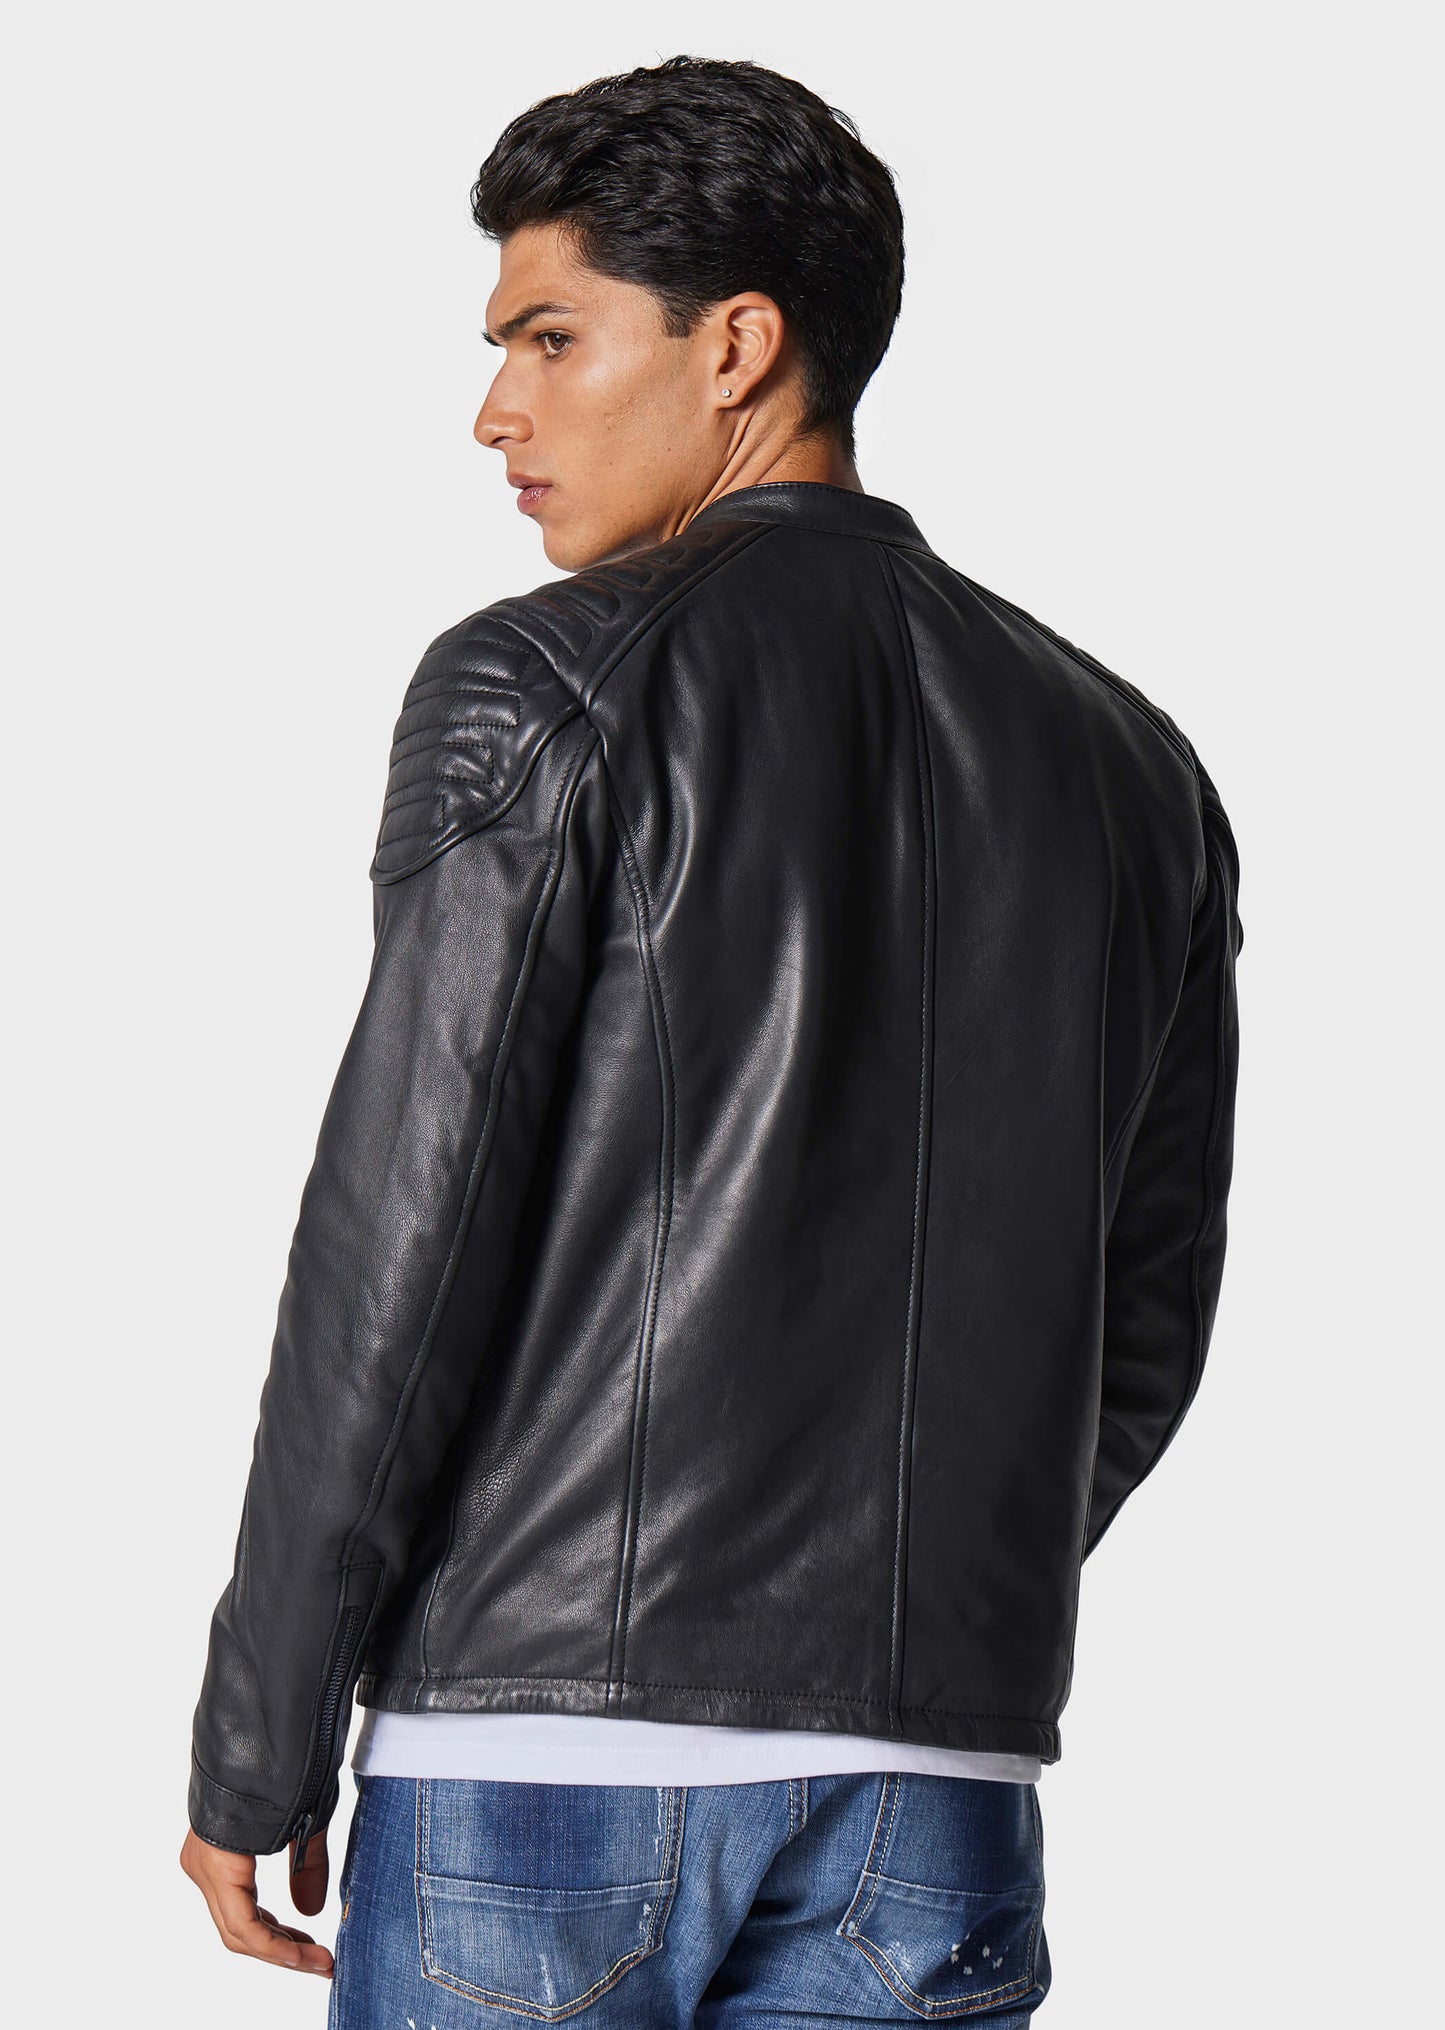 Singo Leather Jacket